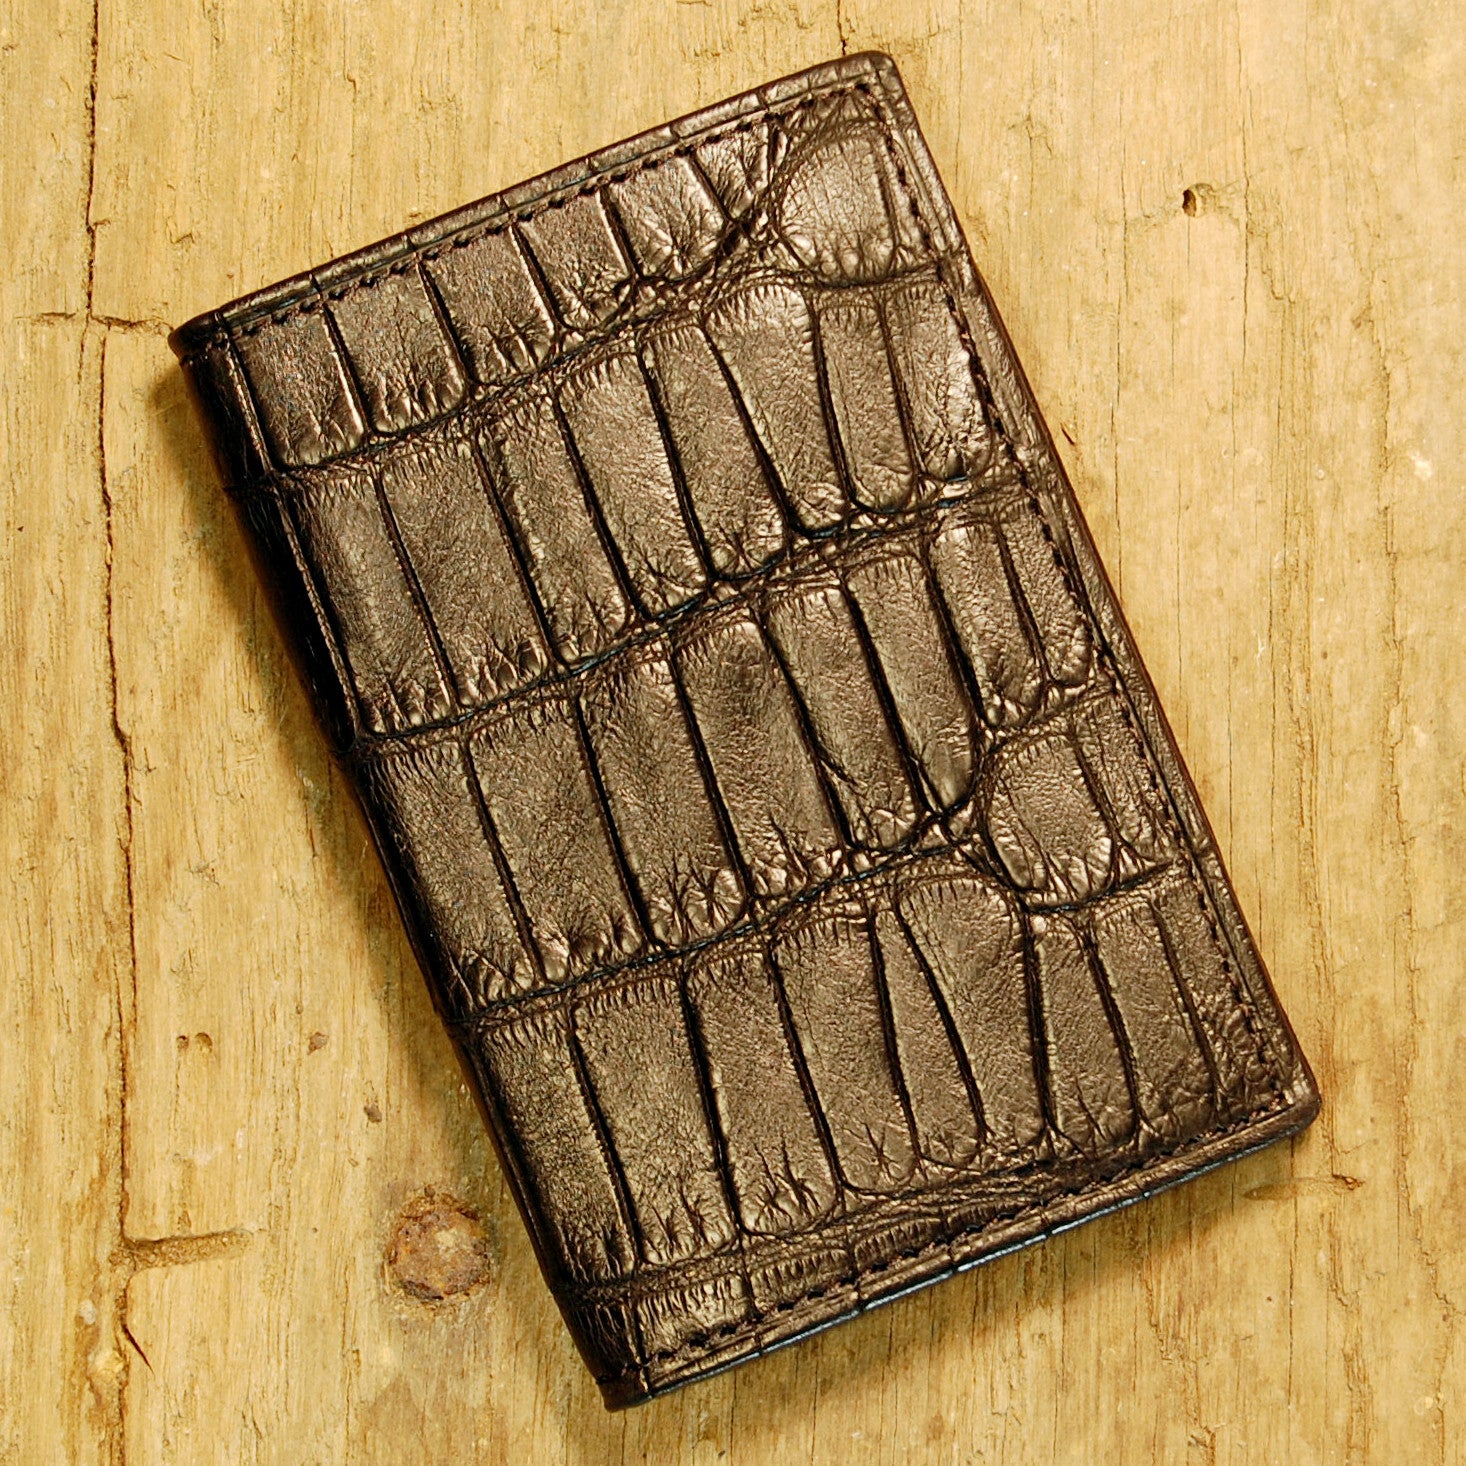 Dark's Leather Gusset Card Case in Alligator Black, Front